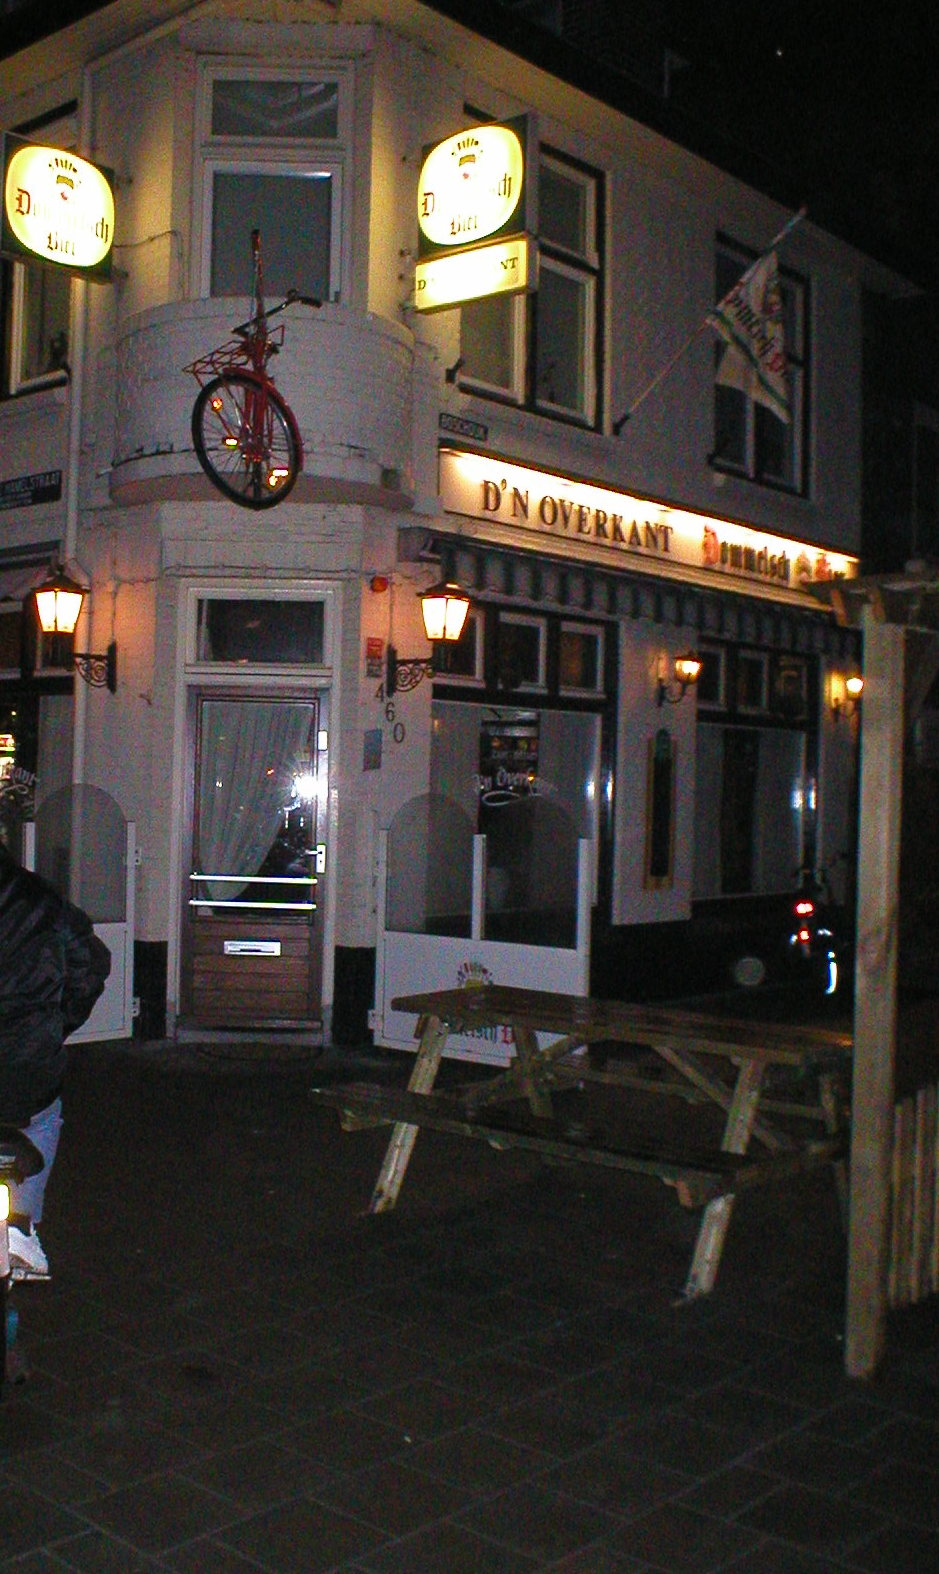 Café D'n Overkant in 2003